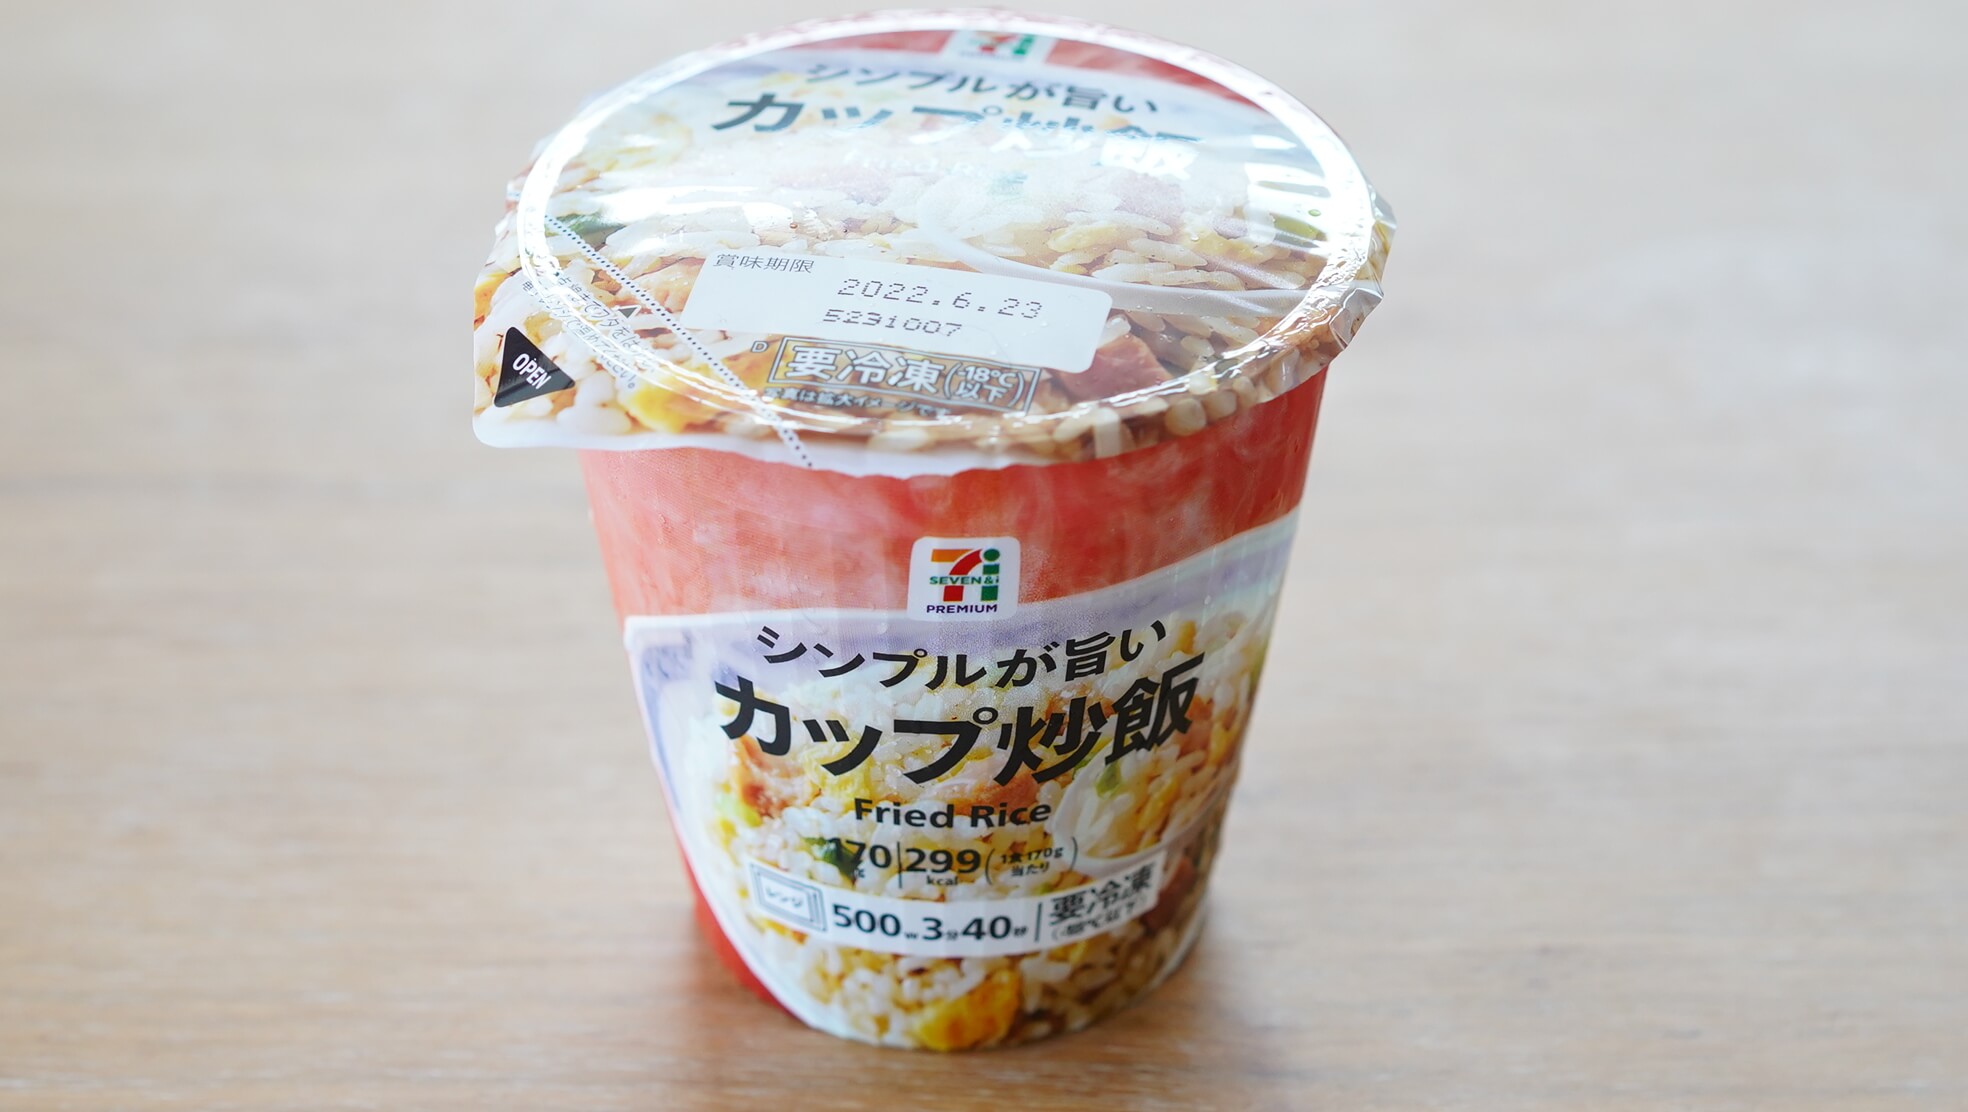 セブンイレブンのおすすめ冷凍食品「シンプルが旨いカップ炒飯」のパッケージ写真